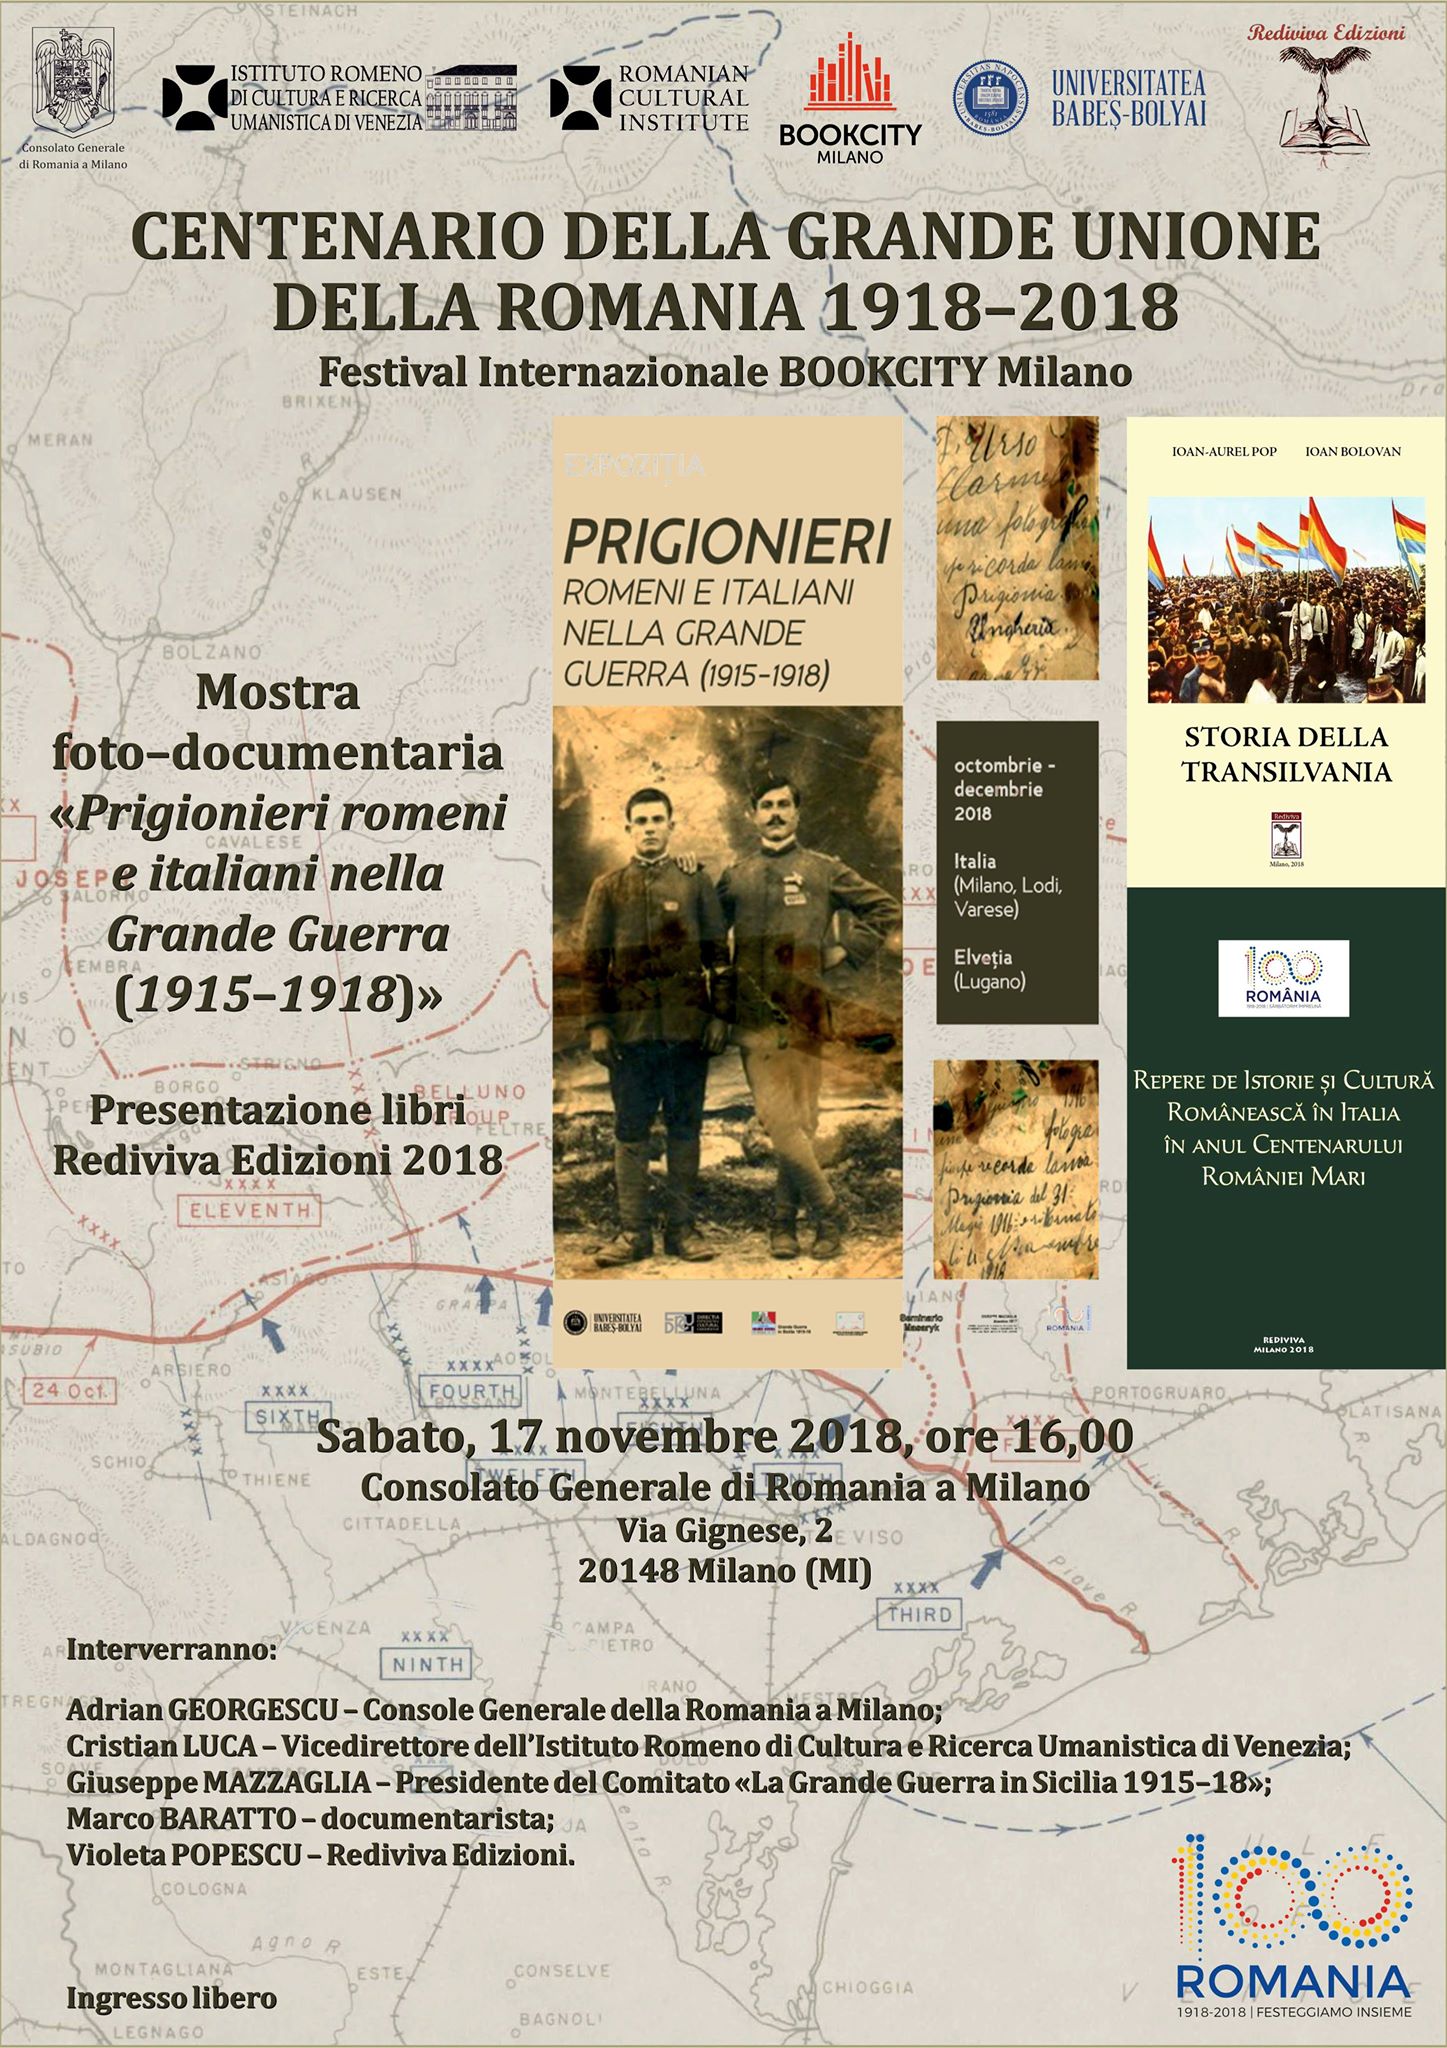 Festival Internazionale Bookcity Milano: “Centenario della Grande Unione della Romania 1918-2018”